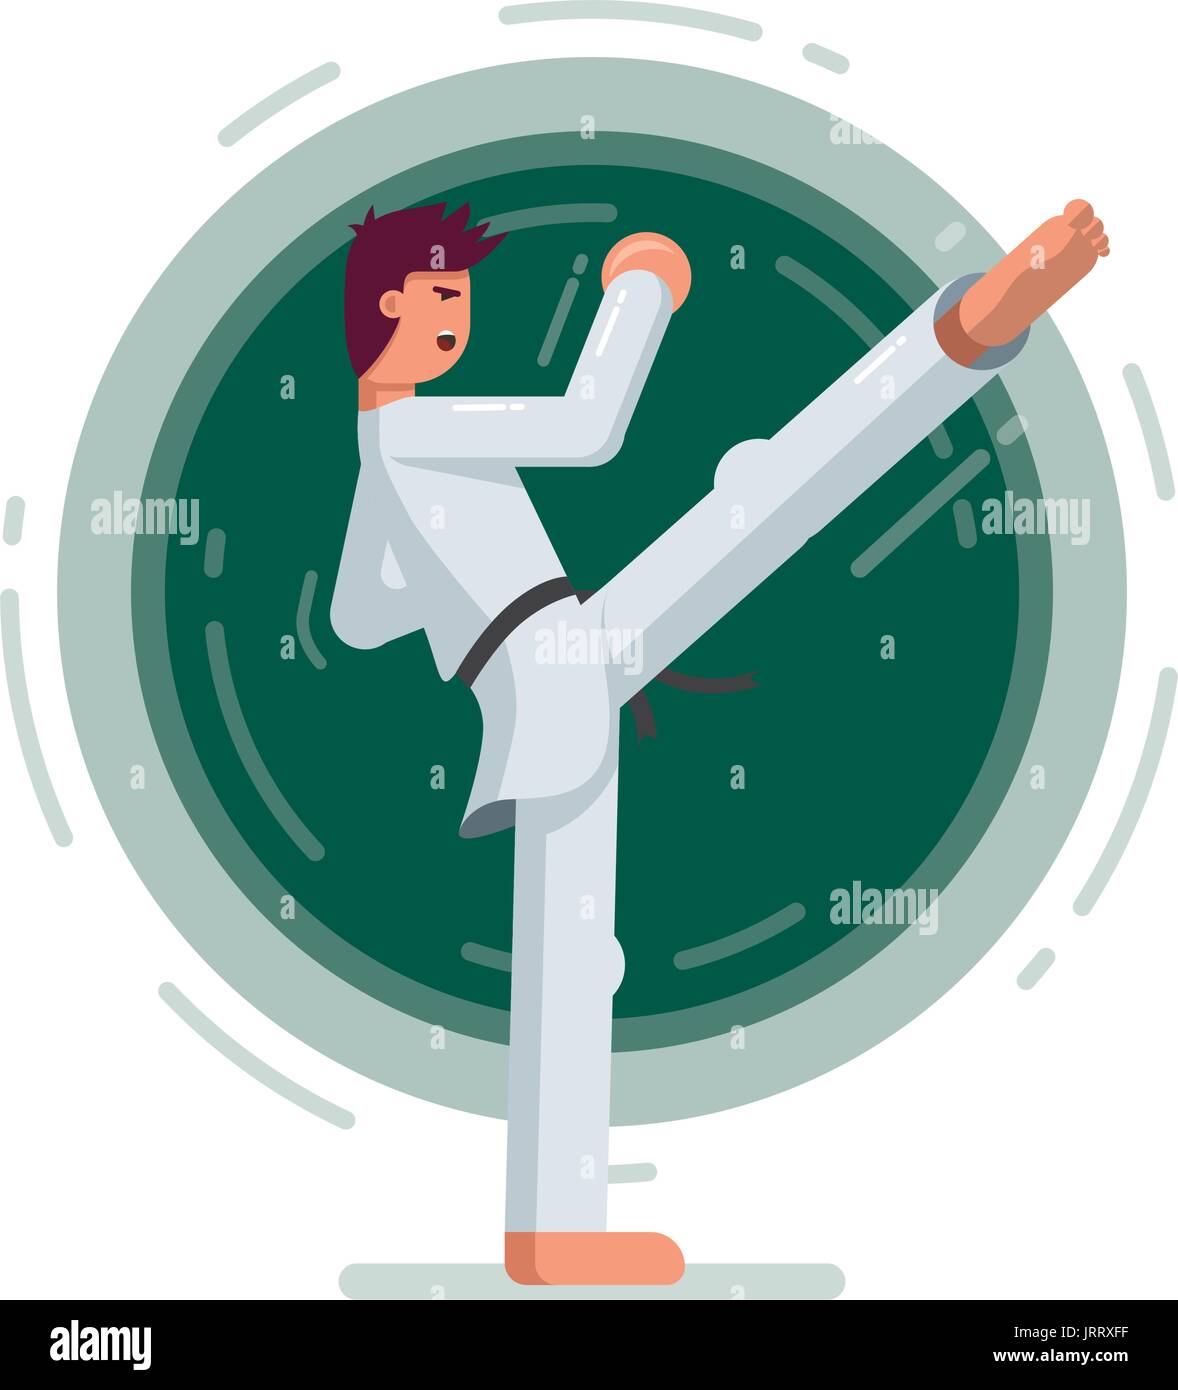 Martial arts training. Flat vector illustration. Stock Vector